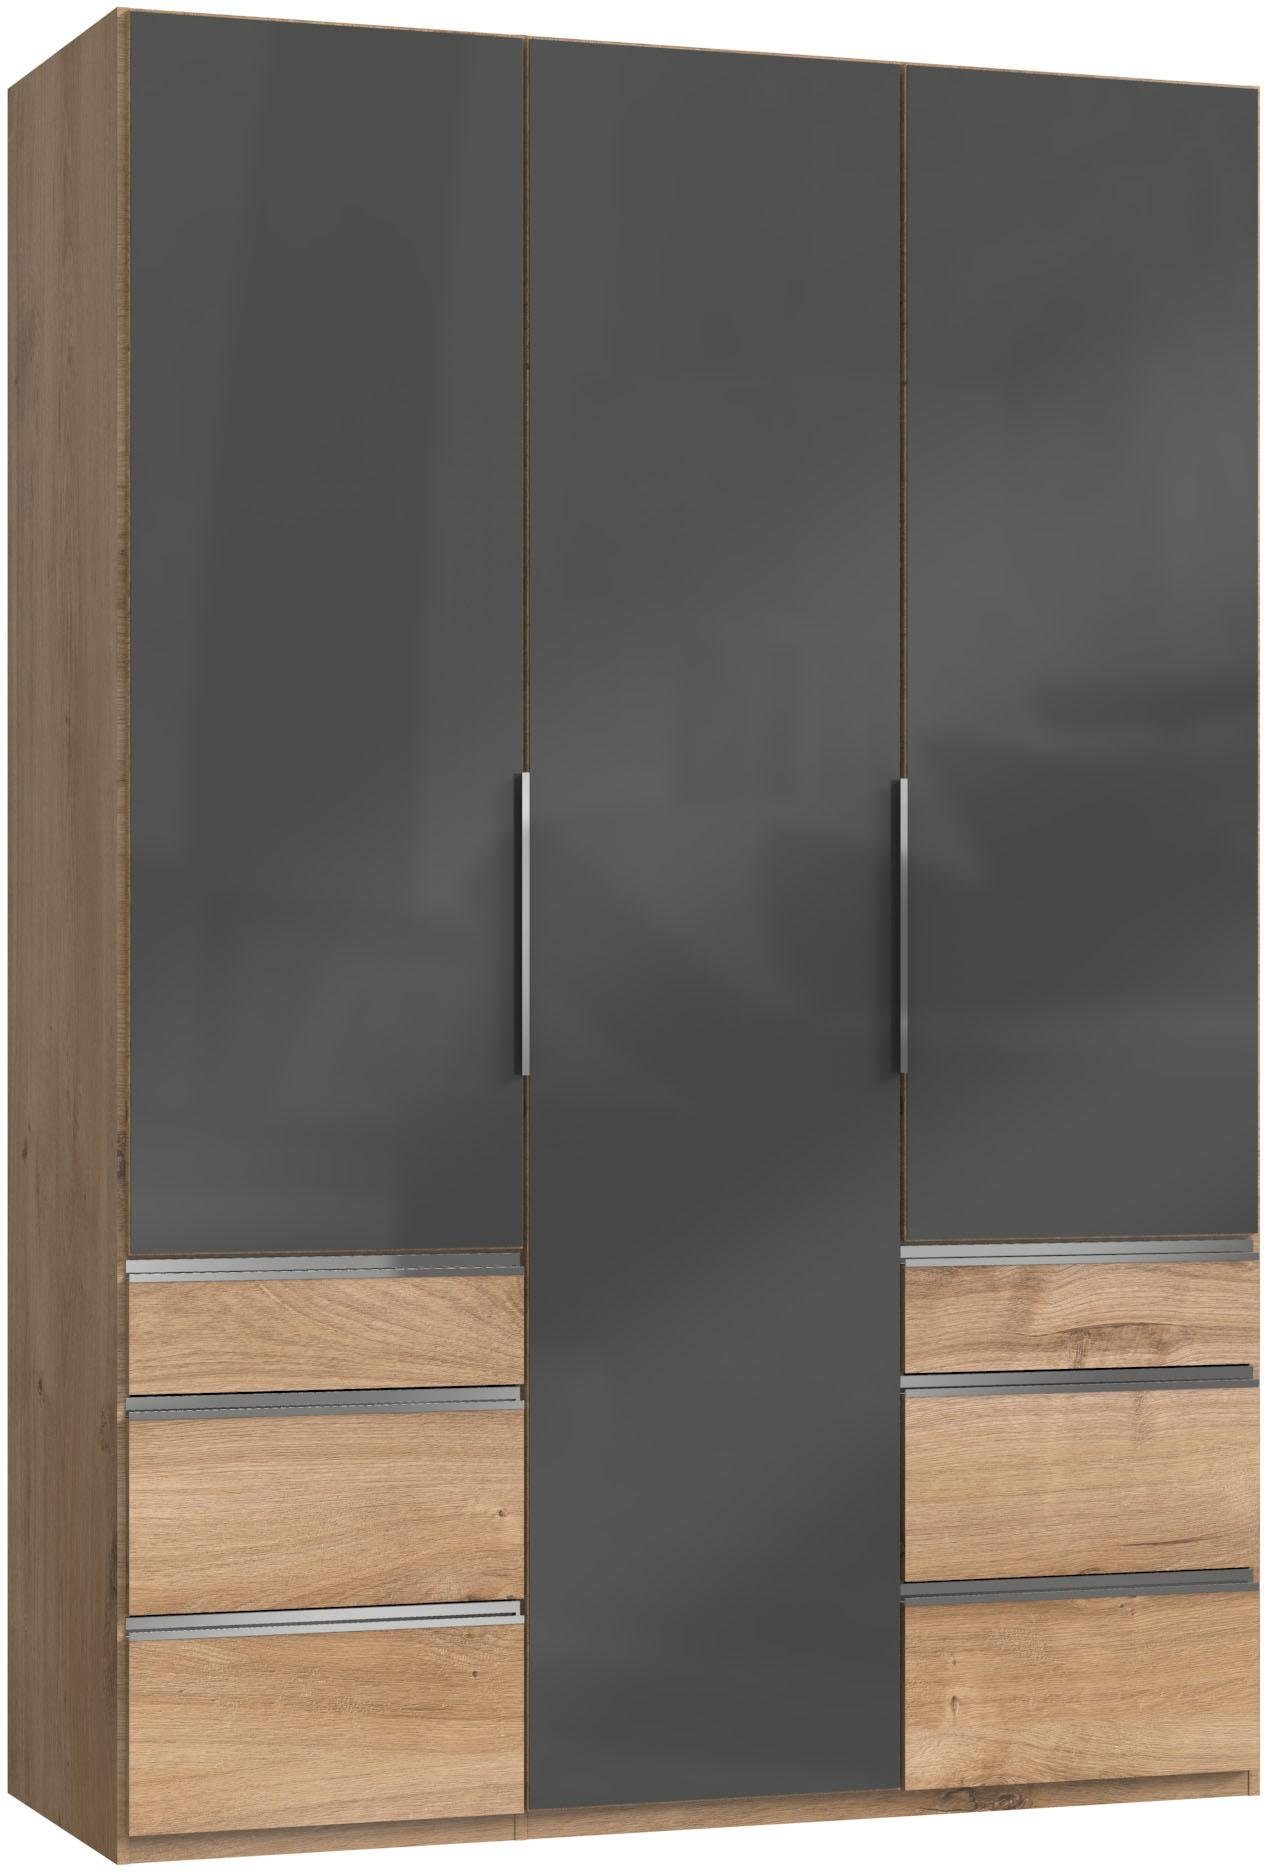 To plankeneichefarben/Grauglas Kleiderschrank Fresh Glastüren mit Go vollflächigen Level